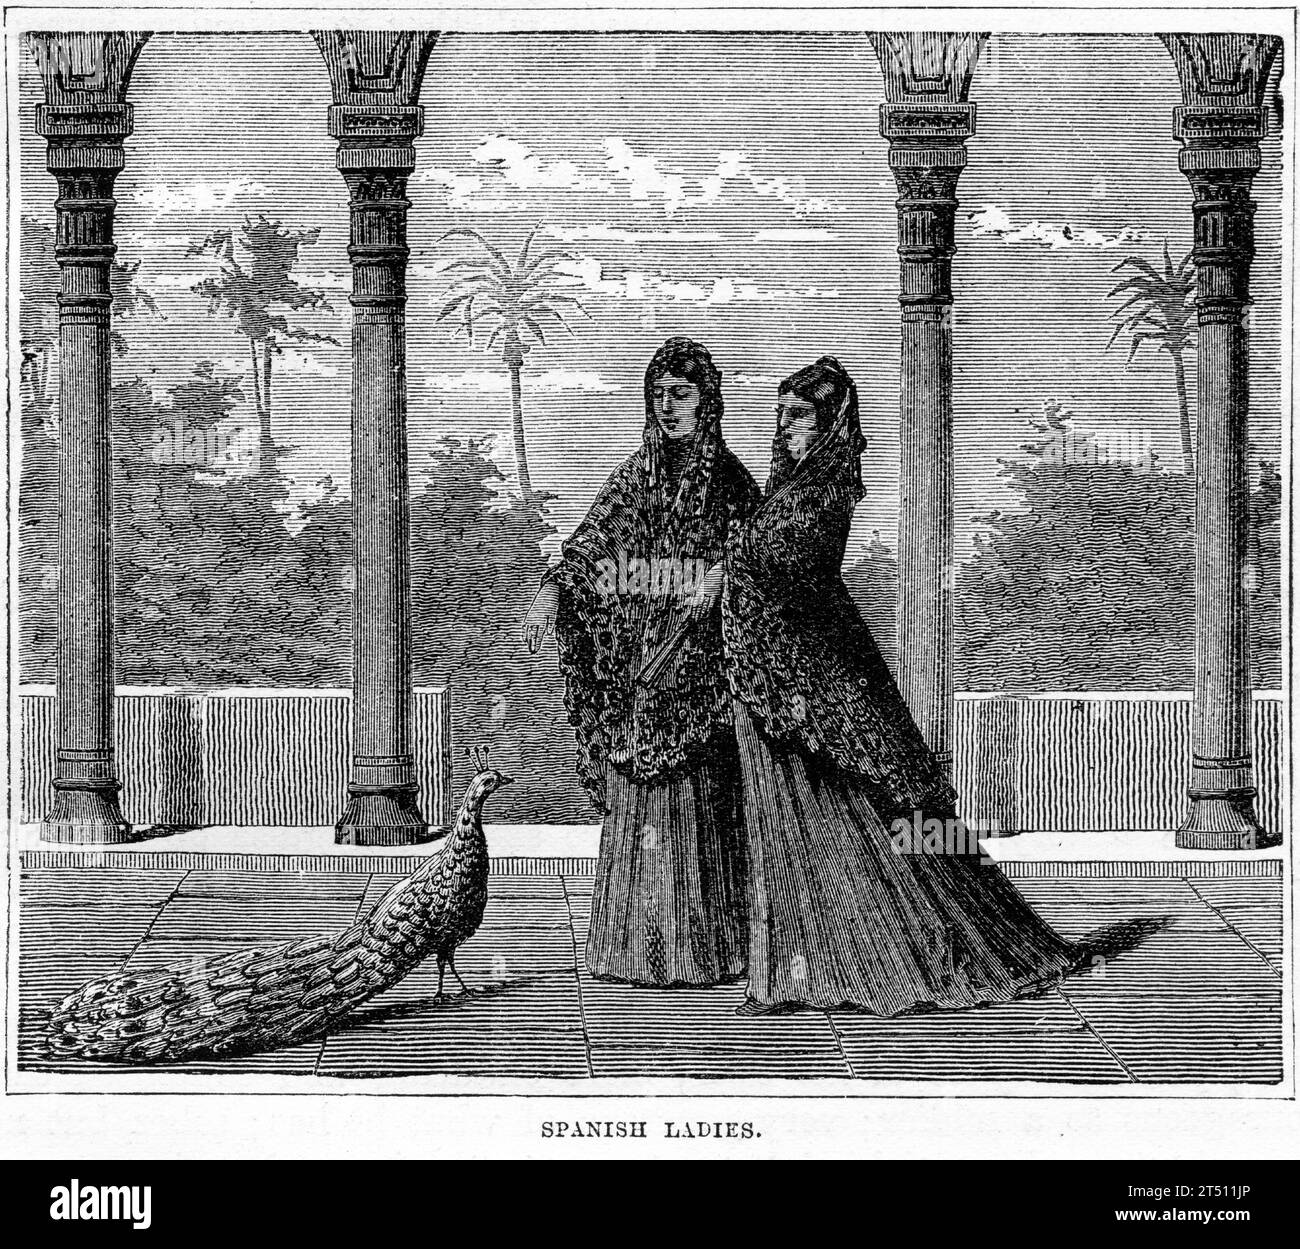 Ritratto di due ricche signore spagnole. Pubblicato intorno al 1880 Foto Stock